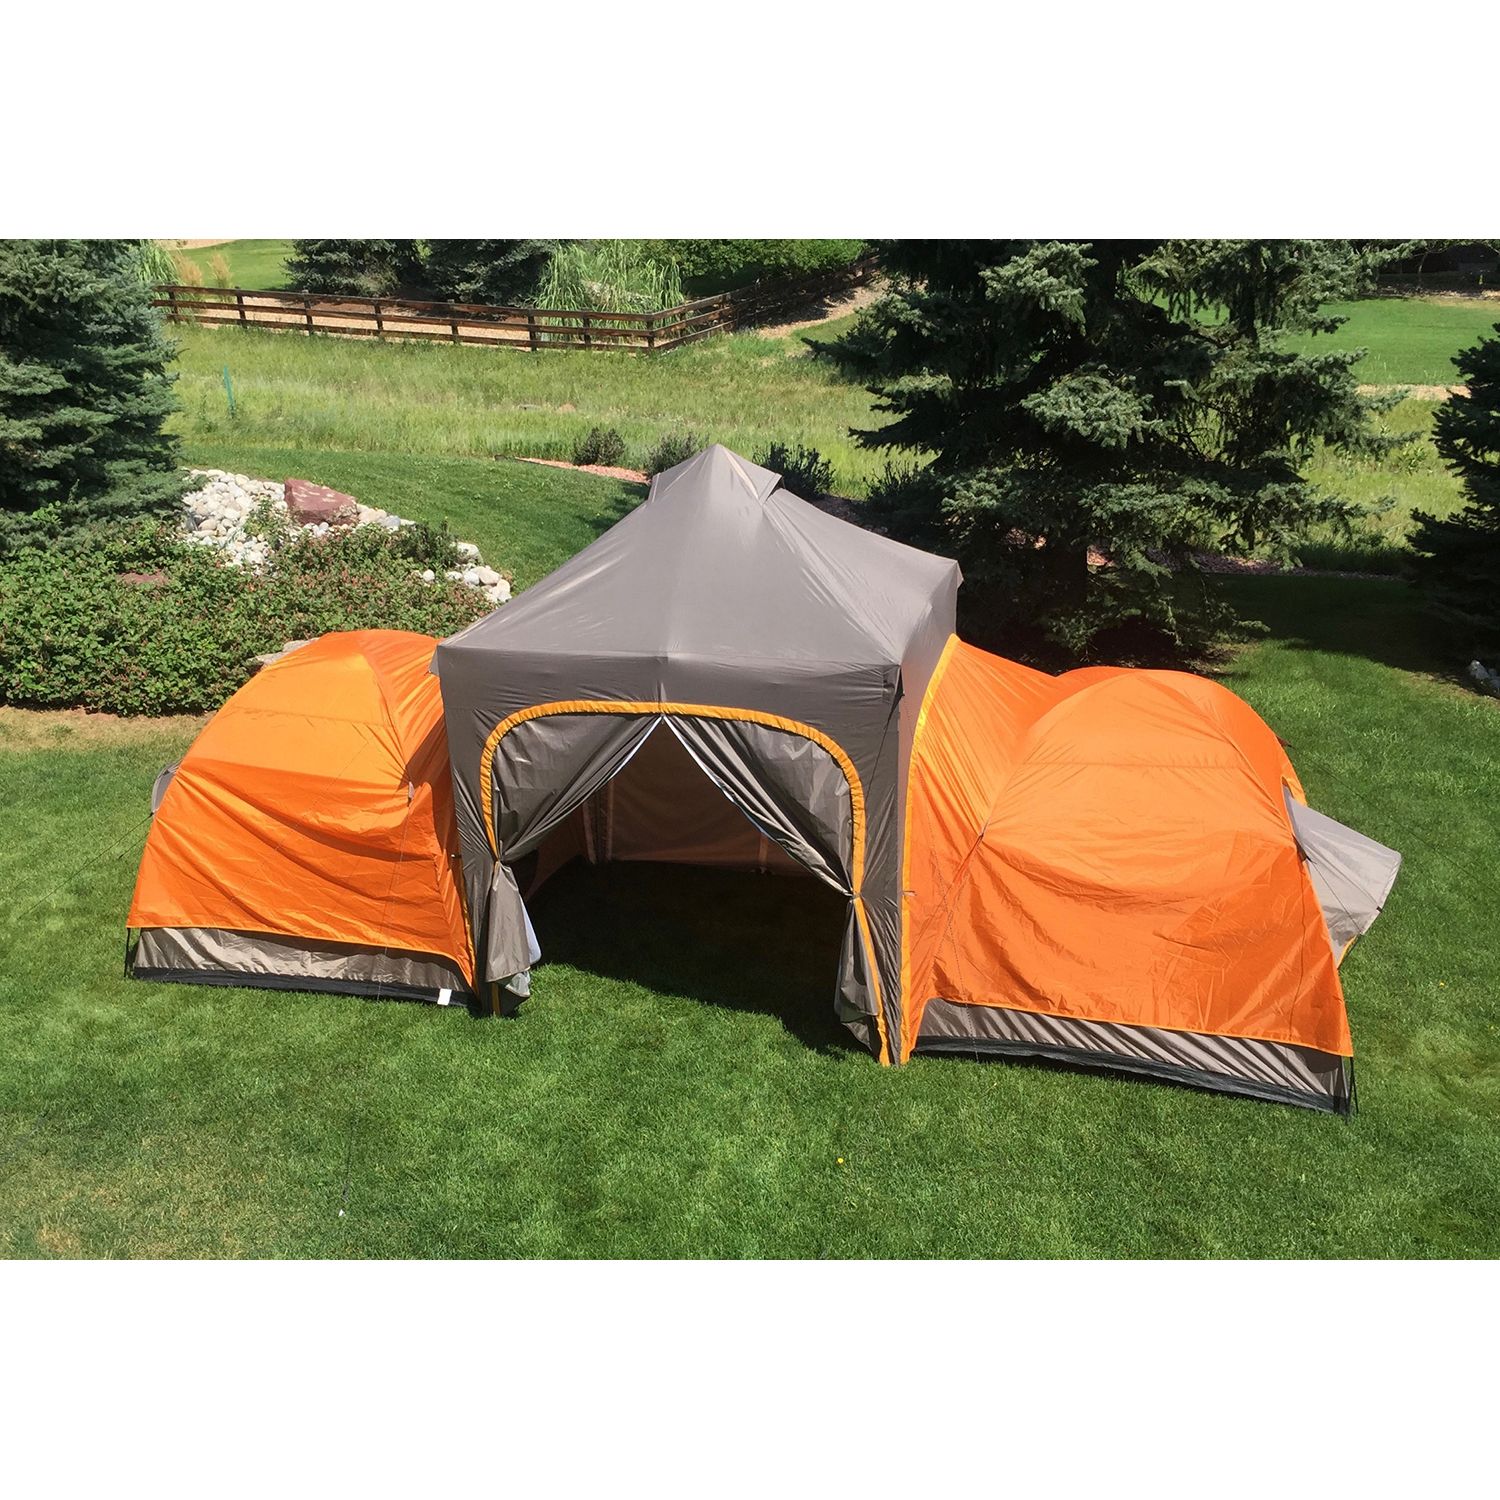 APEX CAMP Popup Modular Outdoor Camping Tent